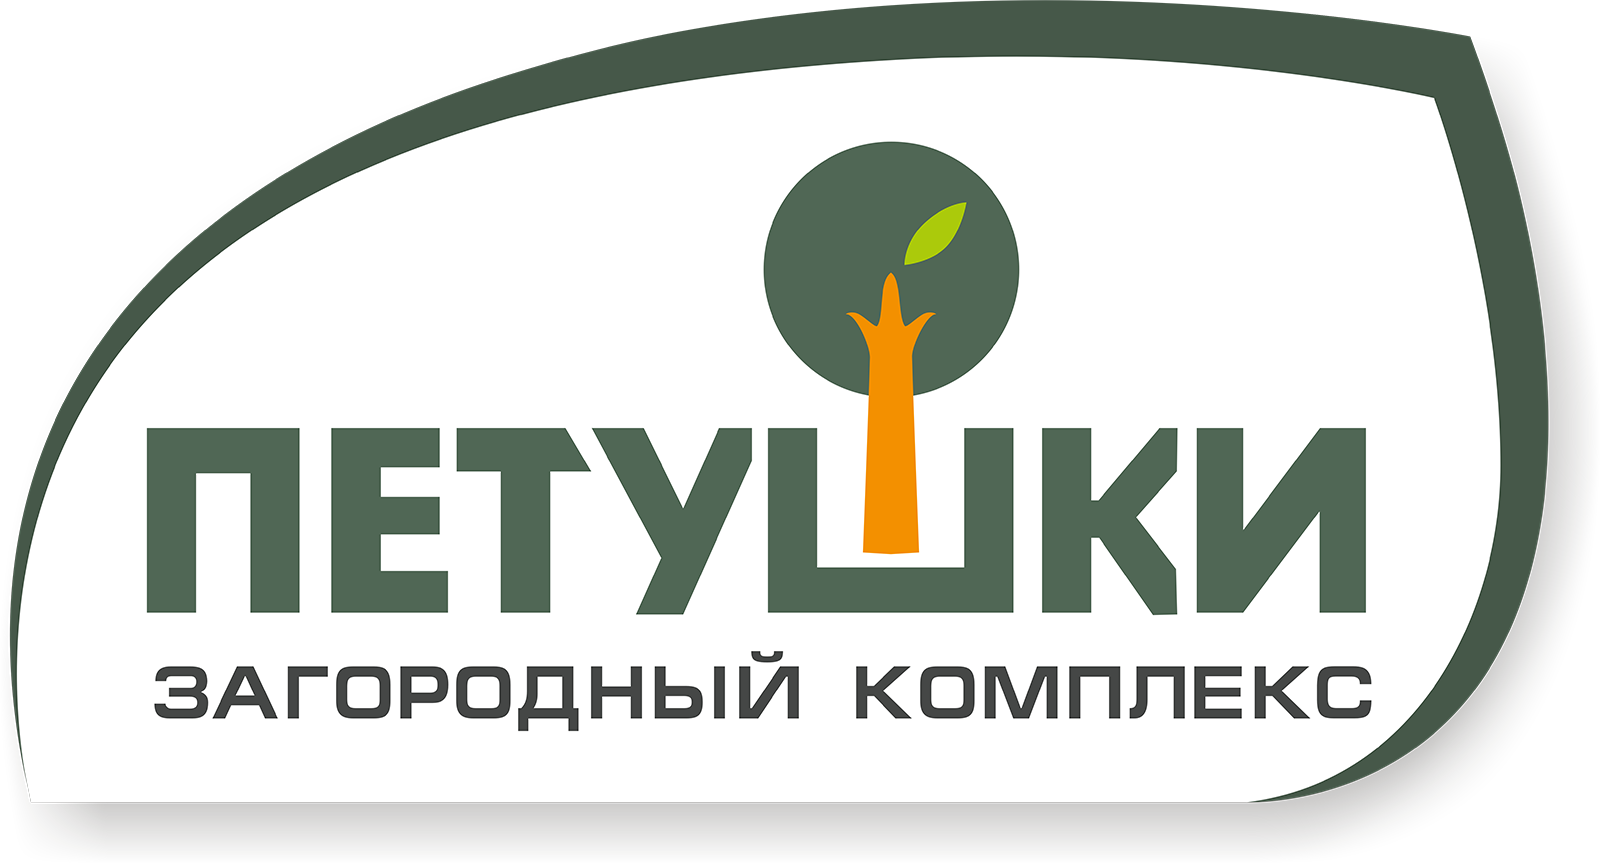 Загородный комплекс "Петушки" - Город Тула logo.png